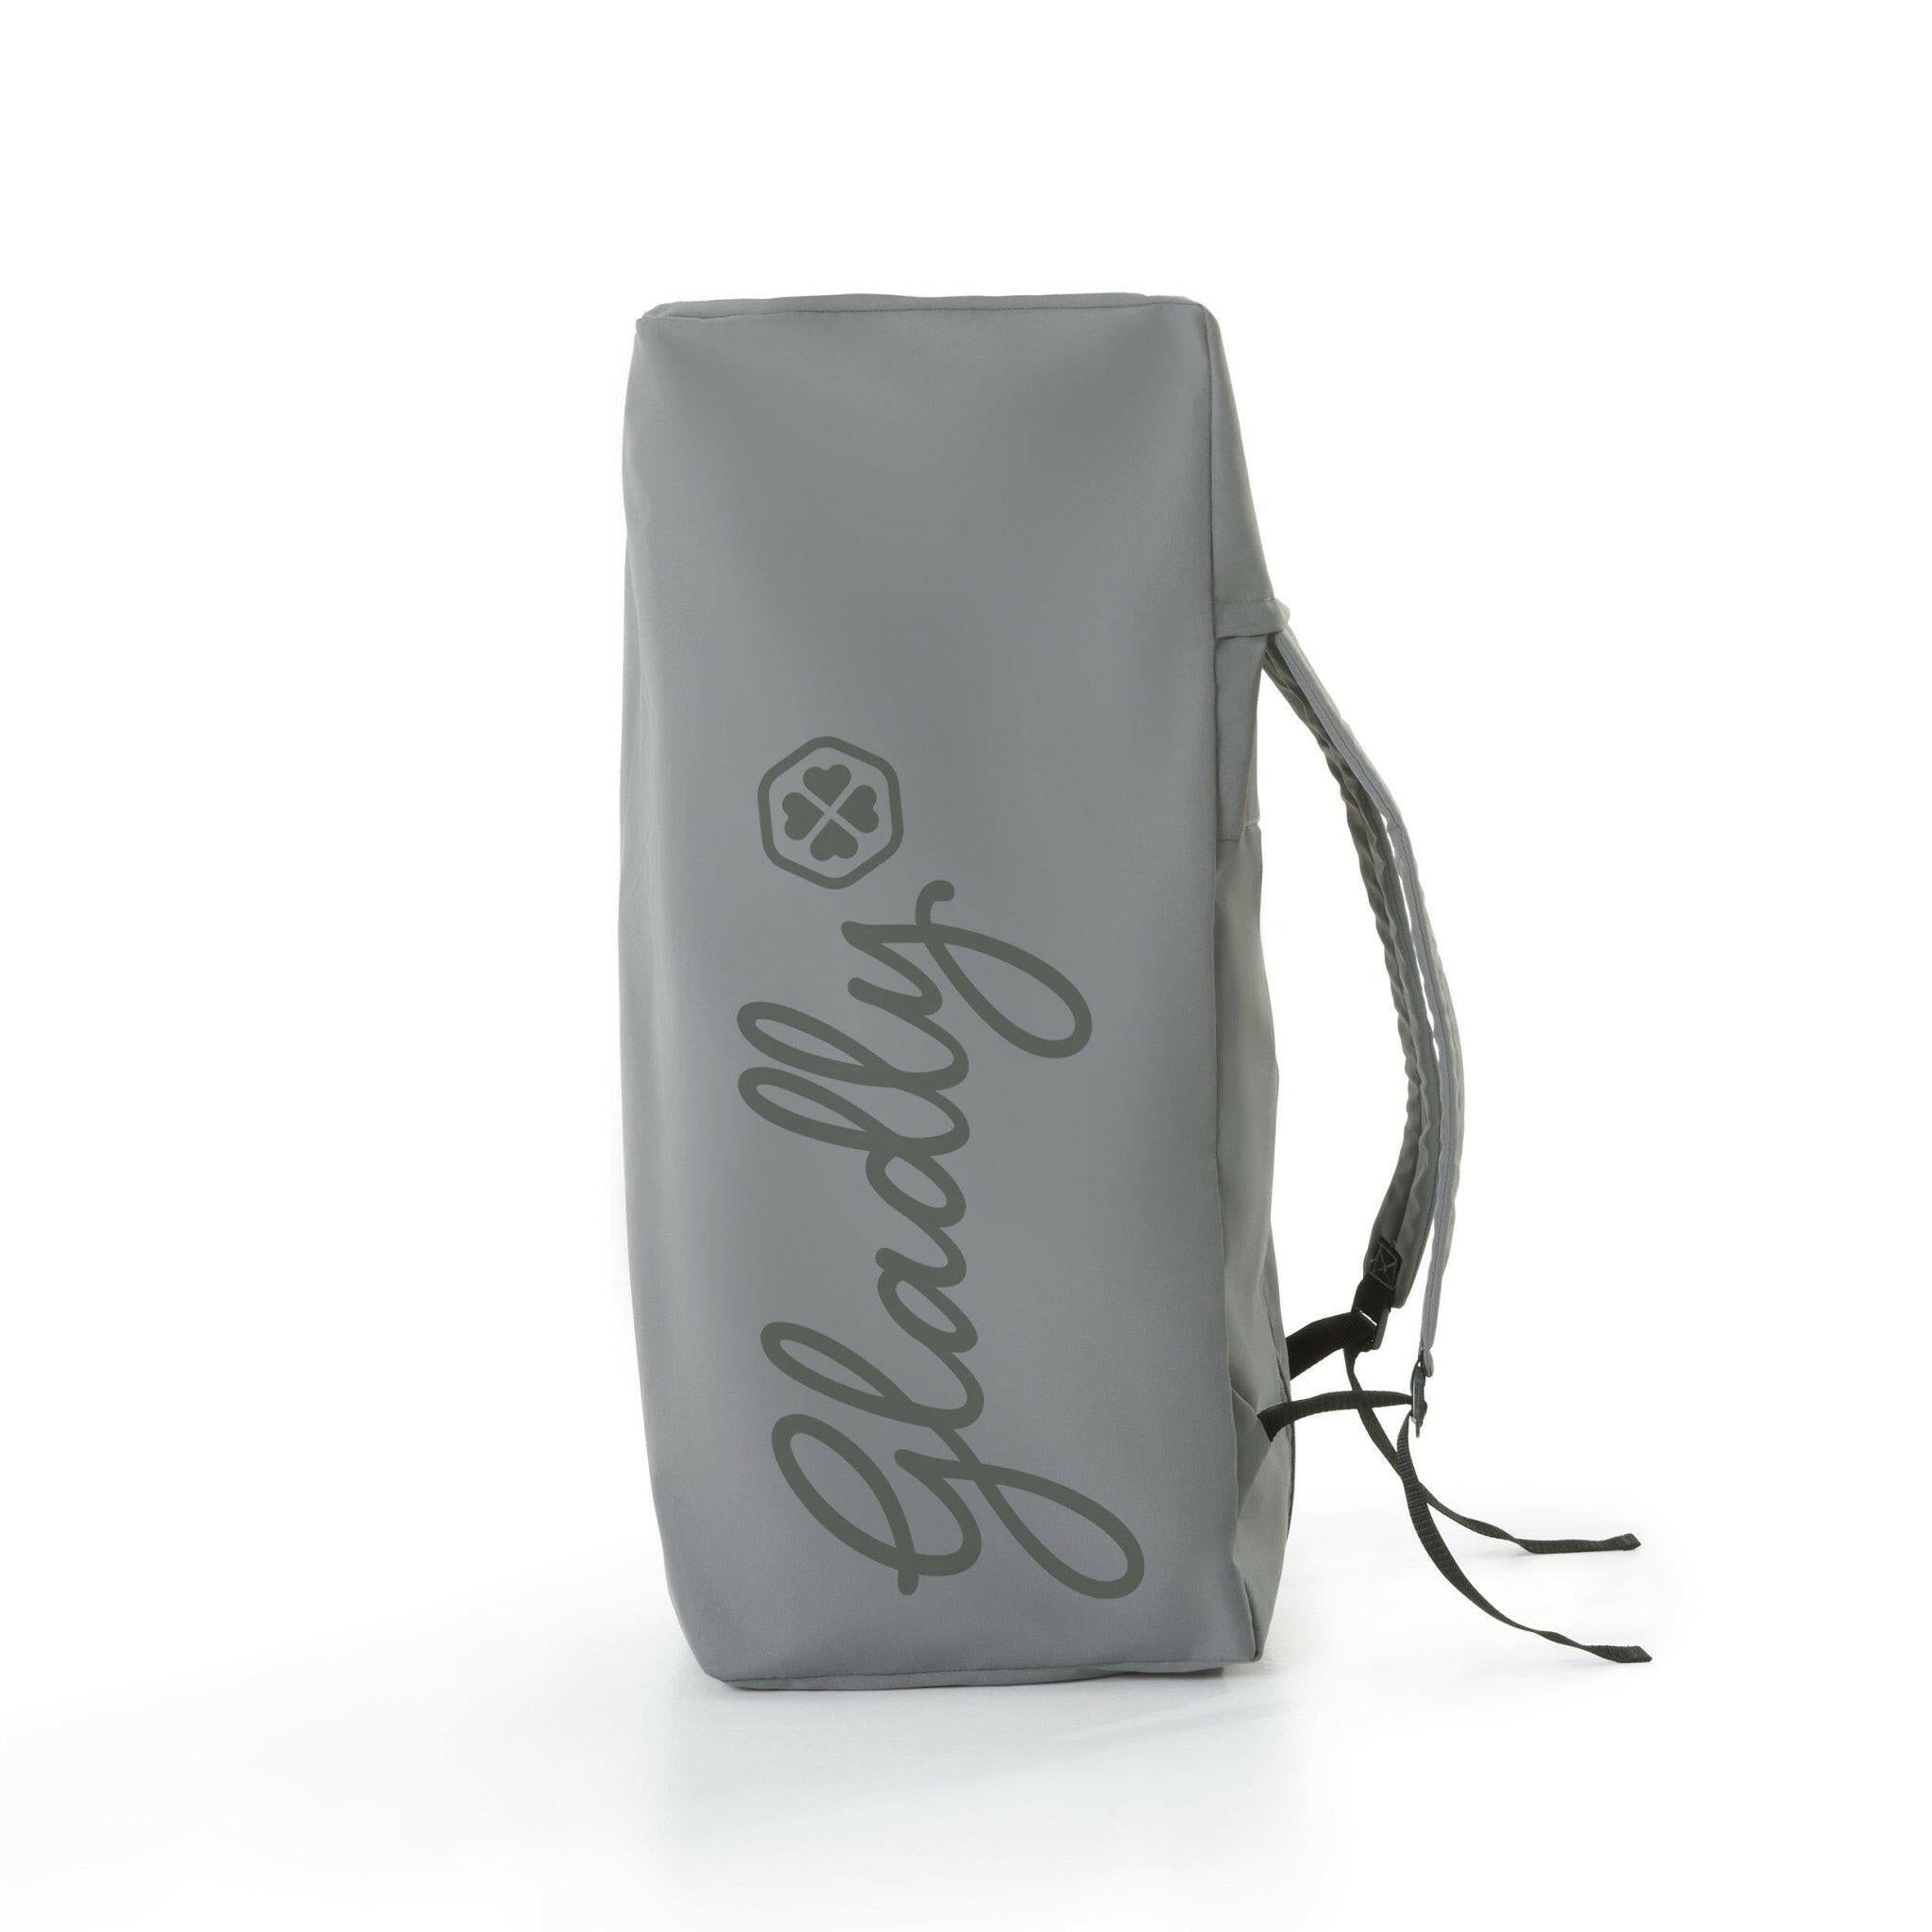 Gaiam Breathable Yoga Mat Bag at